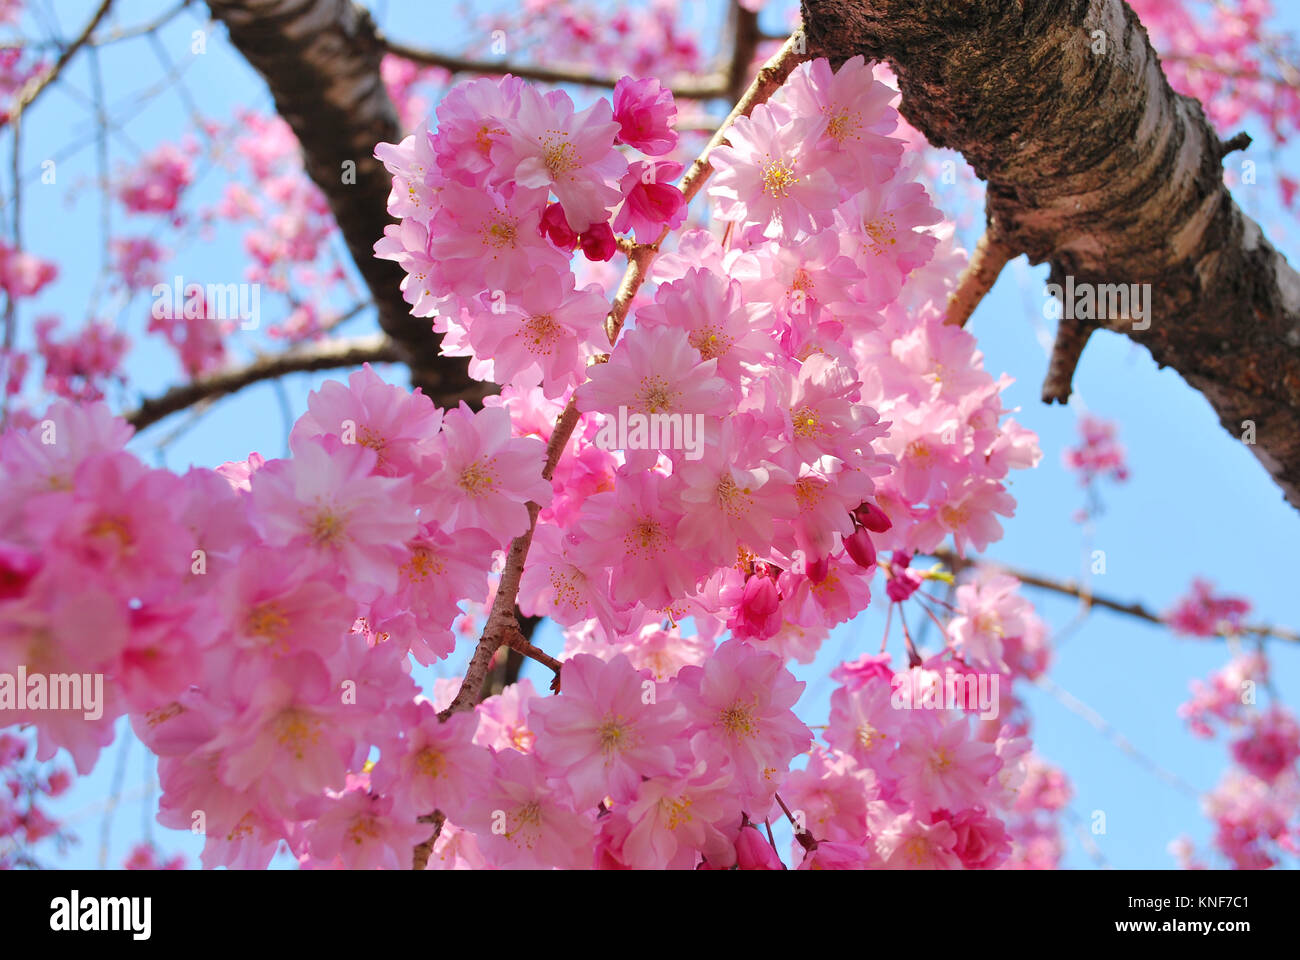 Il giapponese la fioritura dei ciliegi nel periodo primaverile, che simboleggiano il concetto della fugacità, la breve durata di vita, il passaggio del tempo e altre idee astratte. Foto Stock